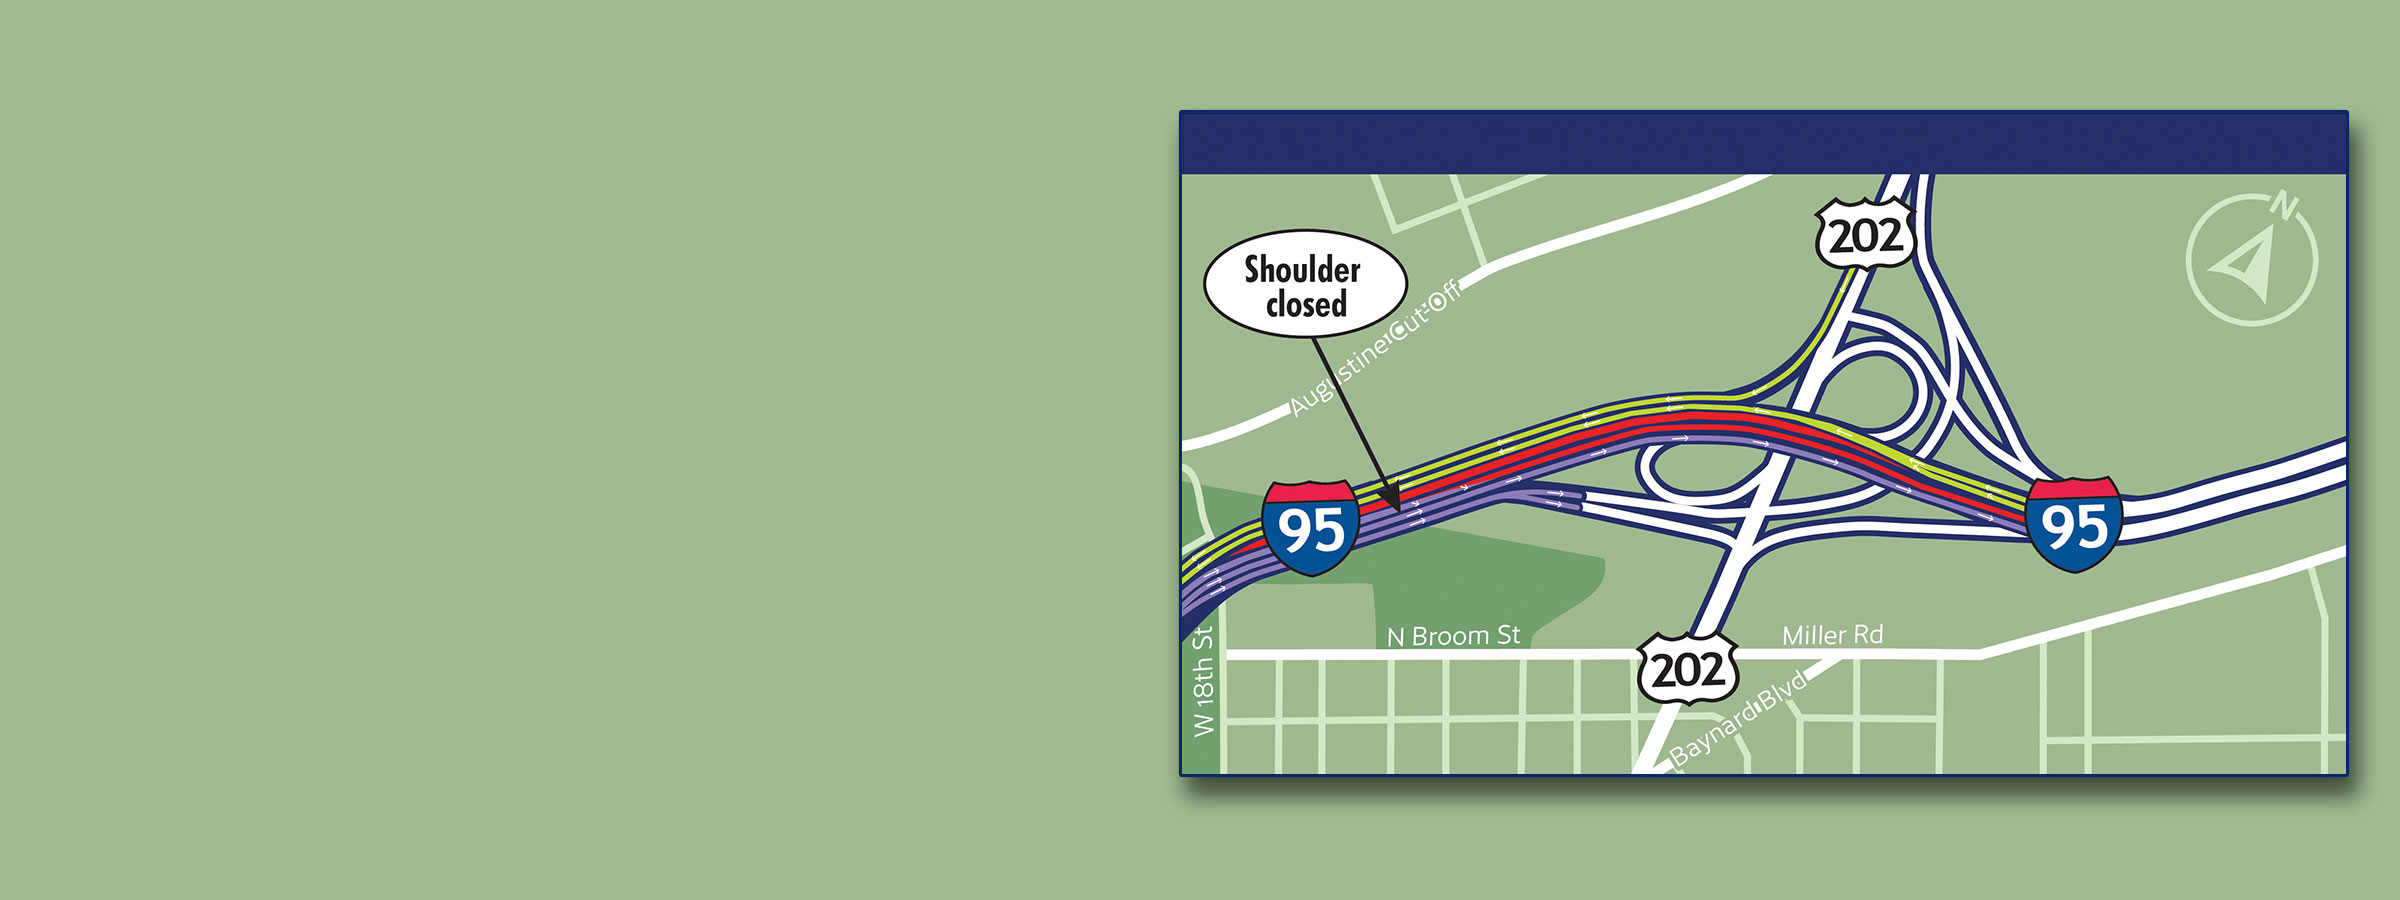 I-95 Northbound Traffic Pattern Change Near <br>US 202 Interchange